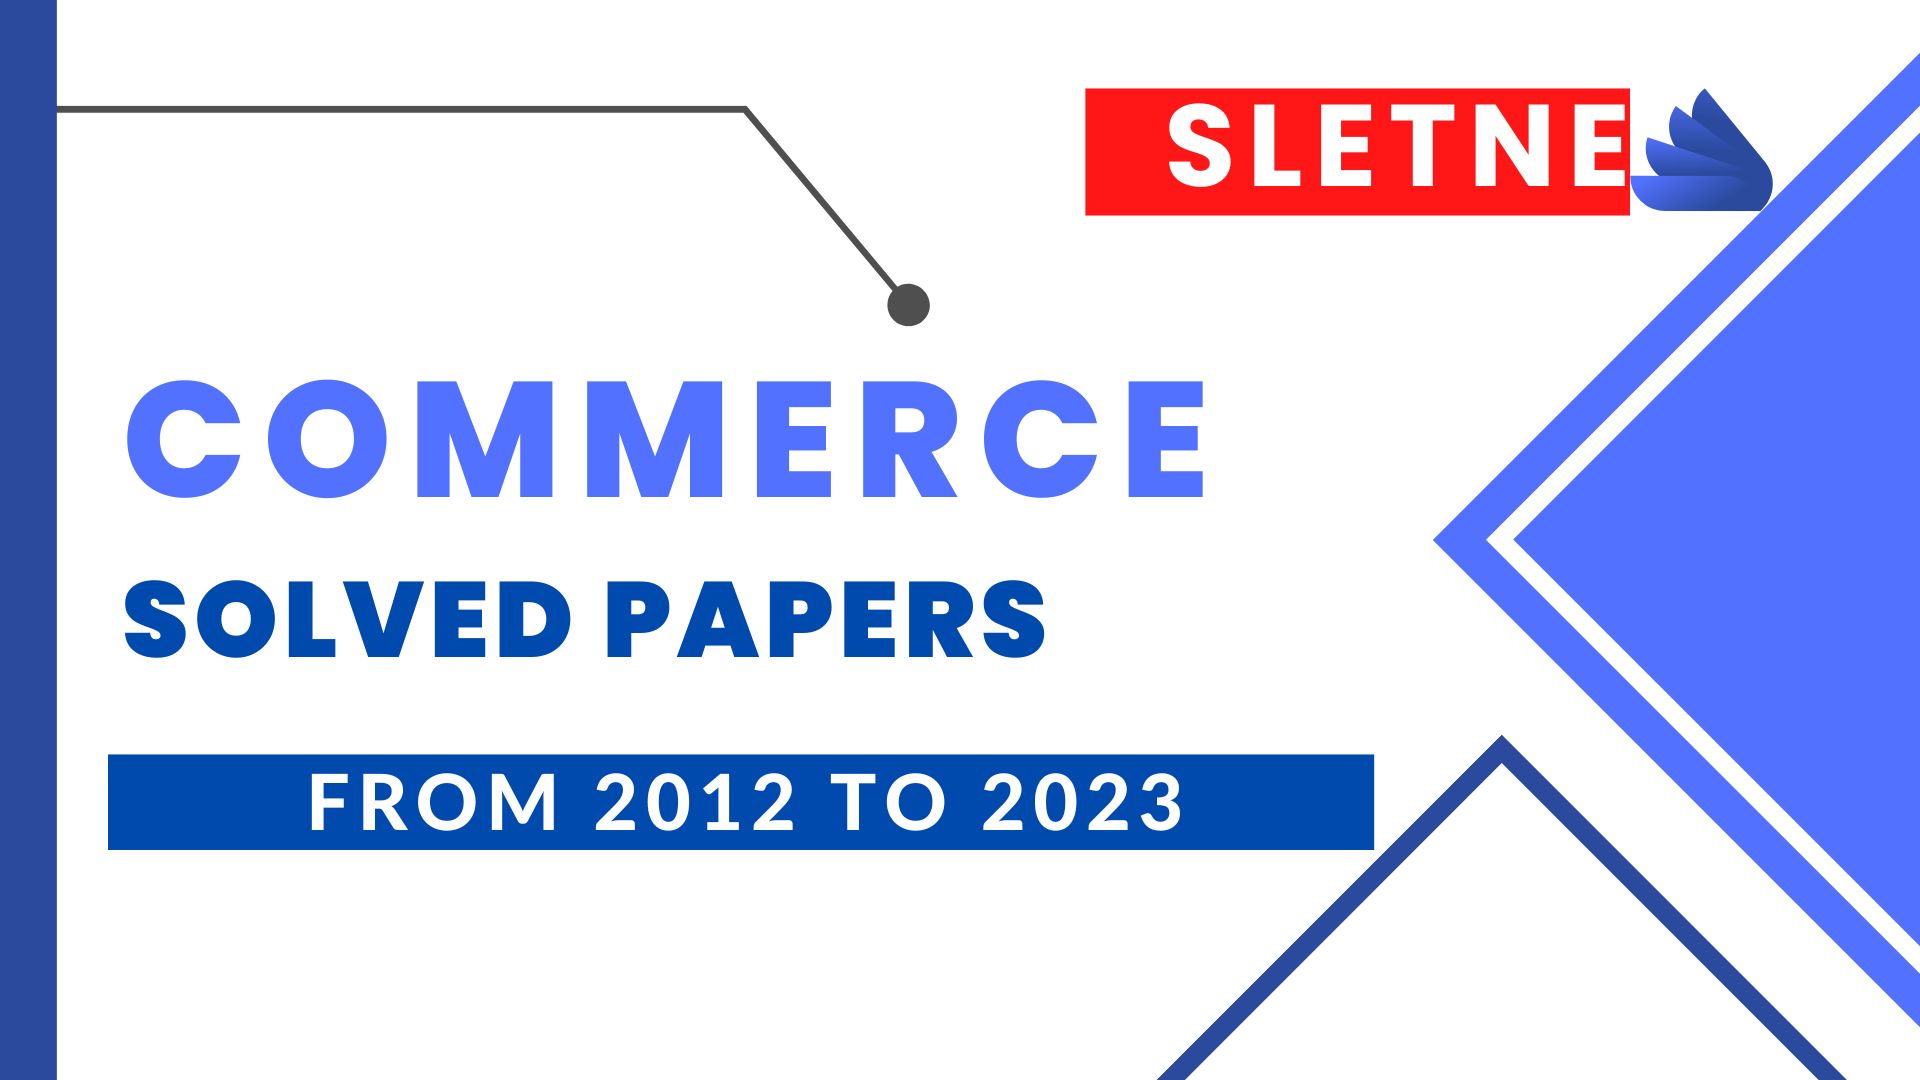 SLET NE Commerce Solved Paper 2023